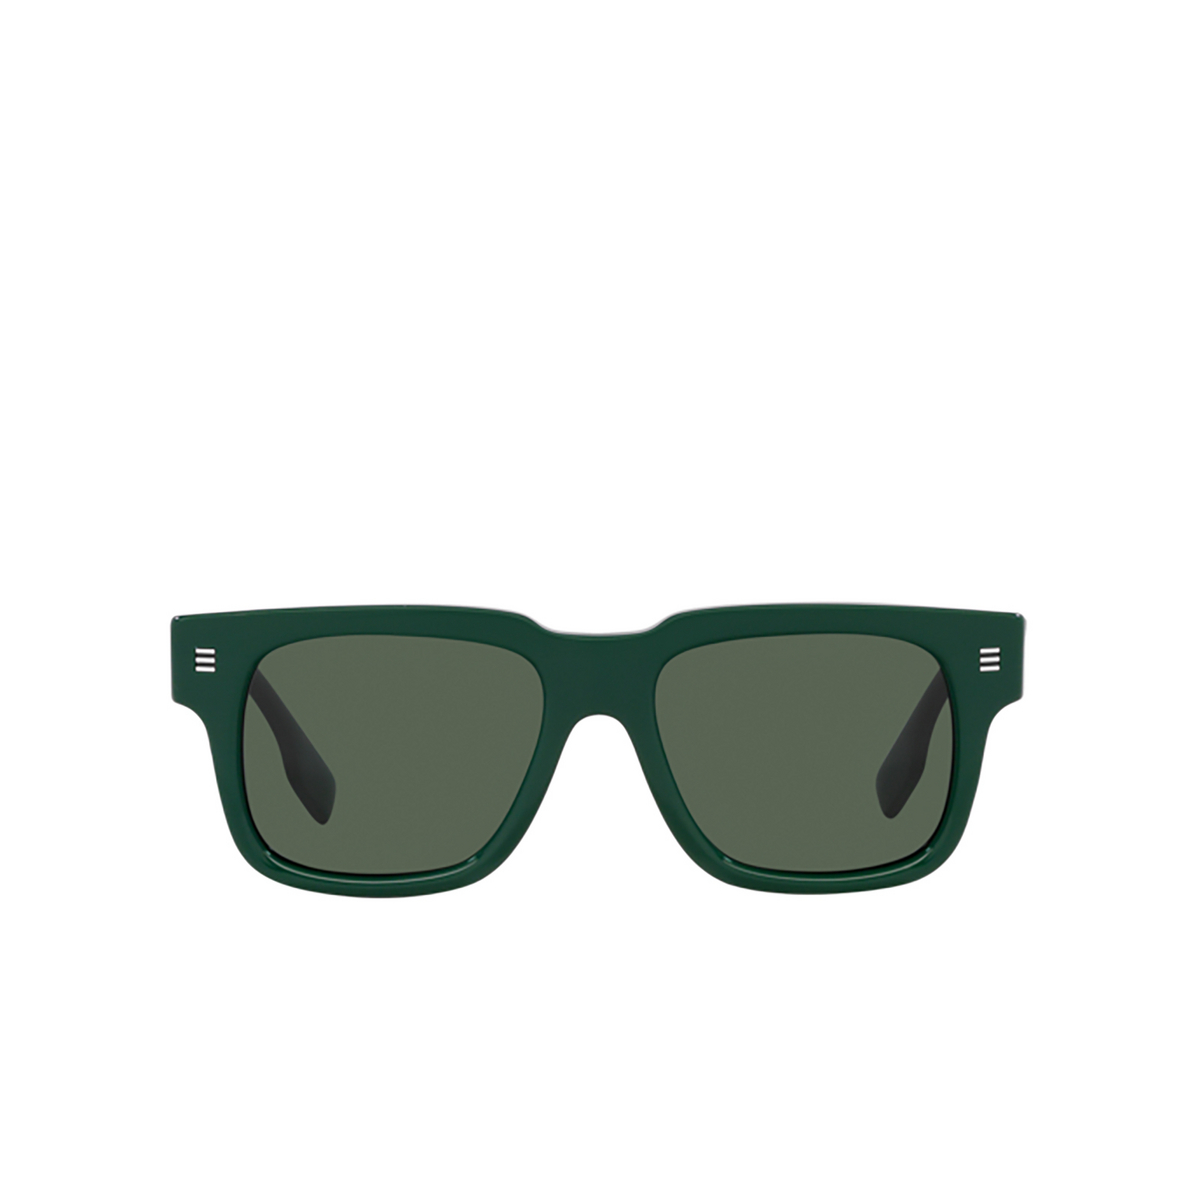 Burberry HAYDEN Sunglasses 405971 Green - front view